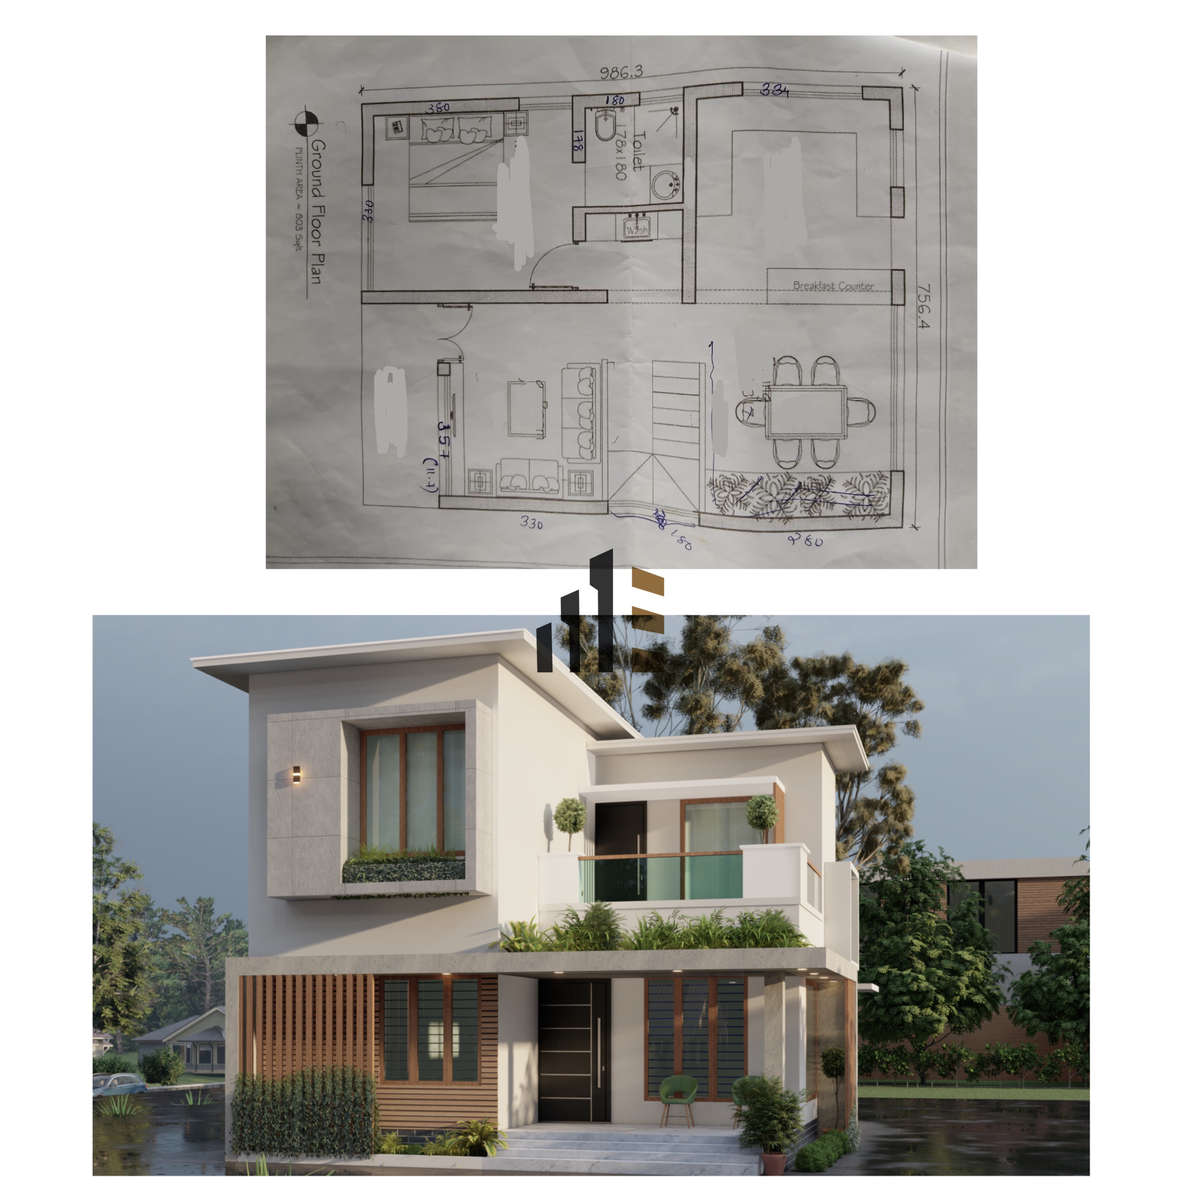 Designs by Architect bihash arshak, Palakkad | Kolo